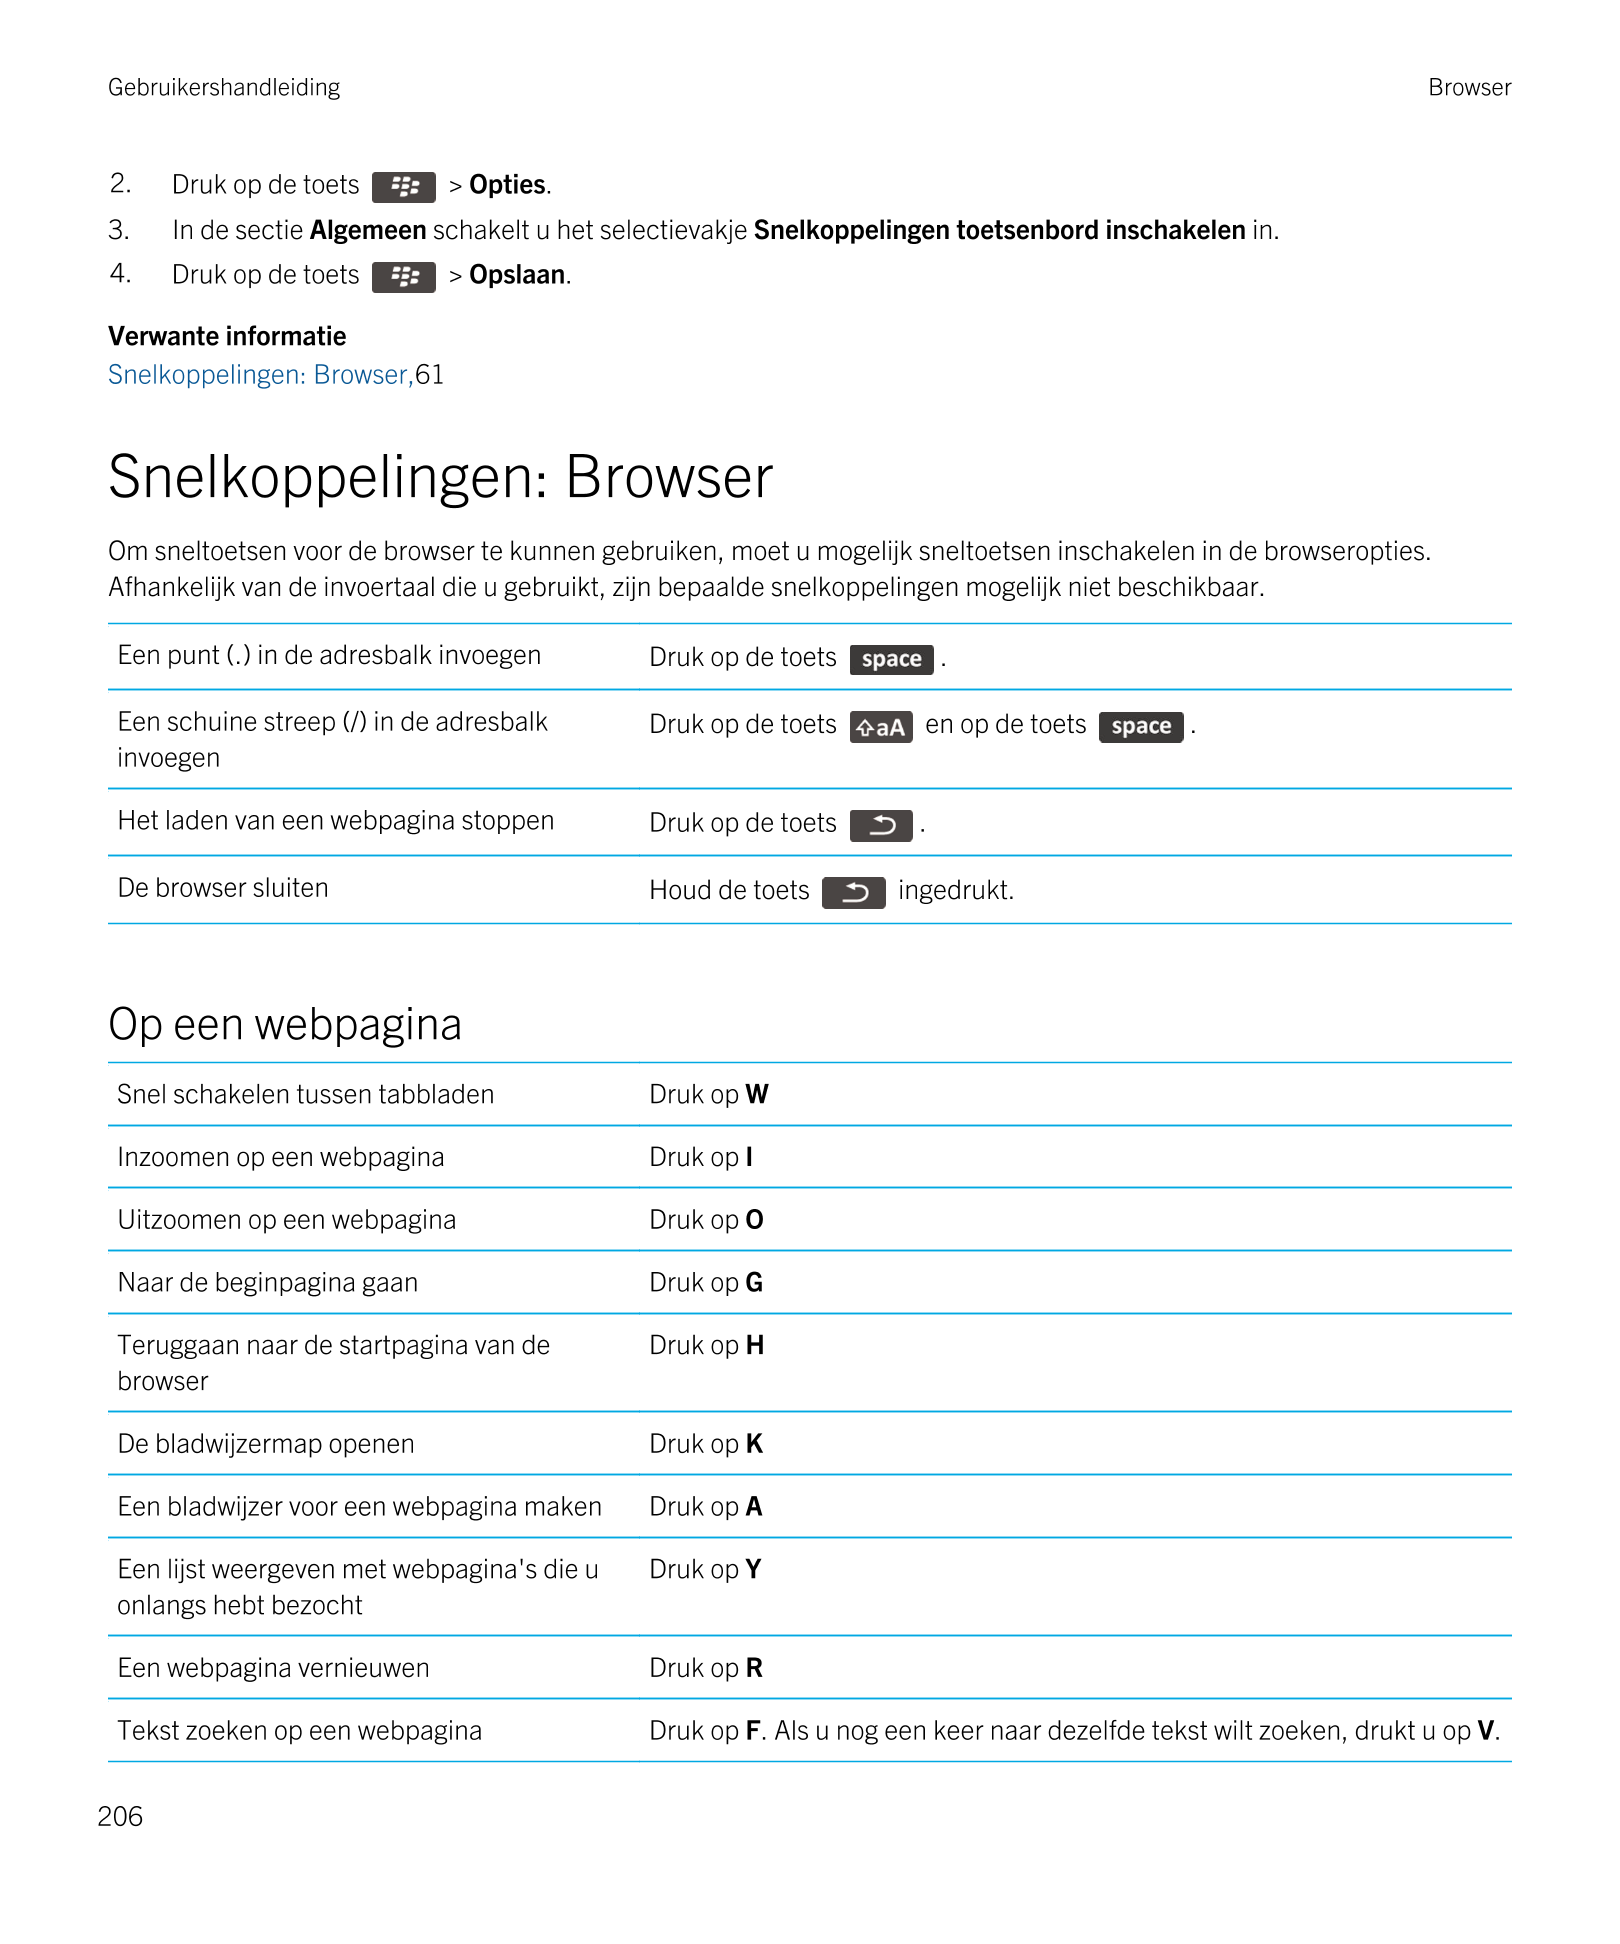 Gebruikershandleiding Browser
2. Druk op de toets   >  Opties. 
3. In de sectie  Algemeen schakelt u het selectievakje  Snelkopp